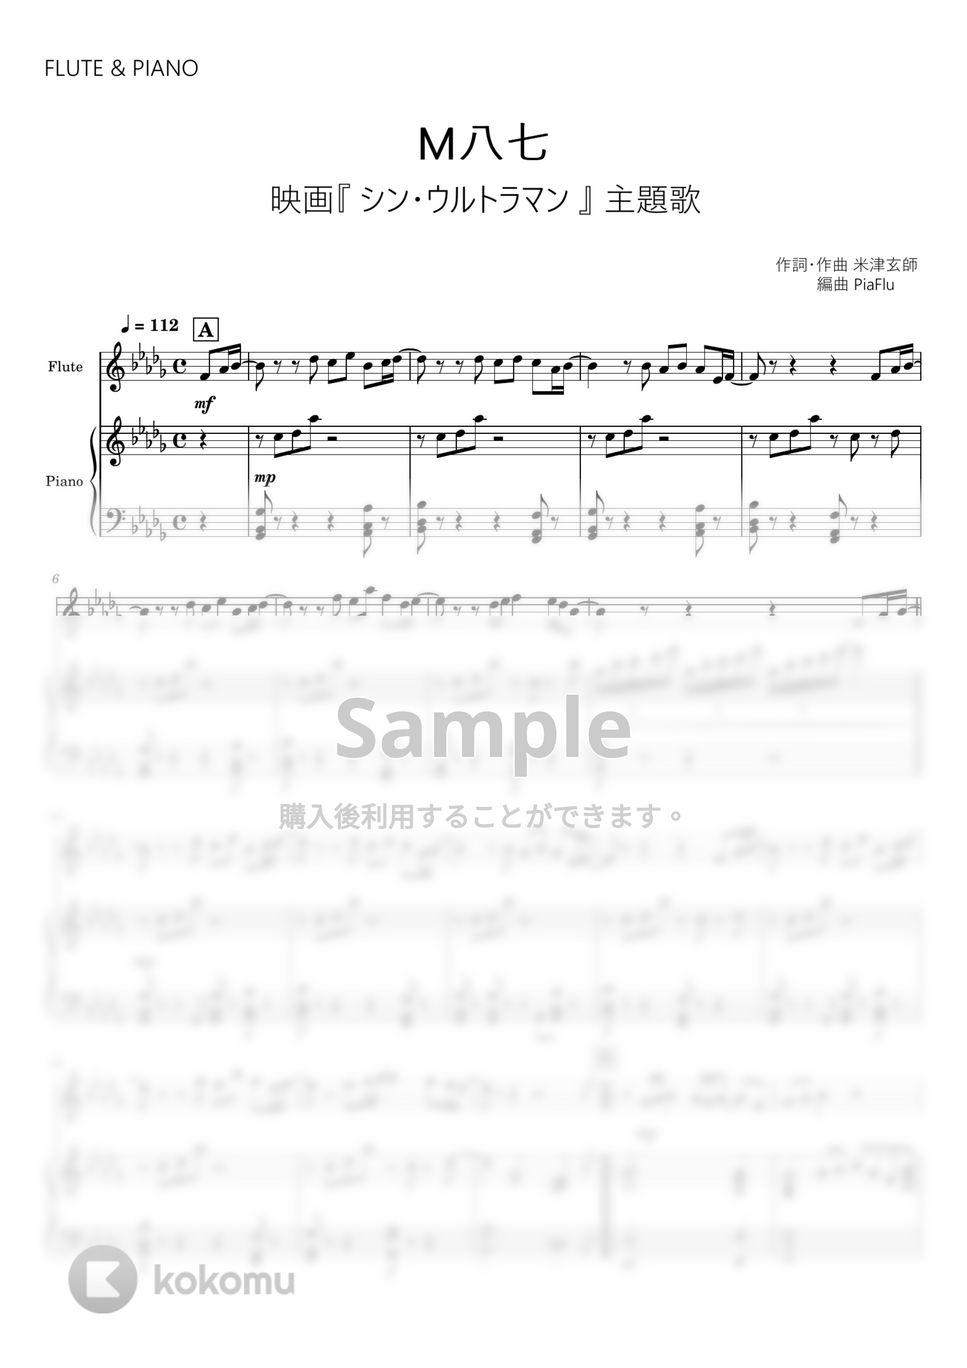 米津玄師 - M八七 (フルート&ピアノ伴奏) by PiaFlu